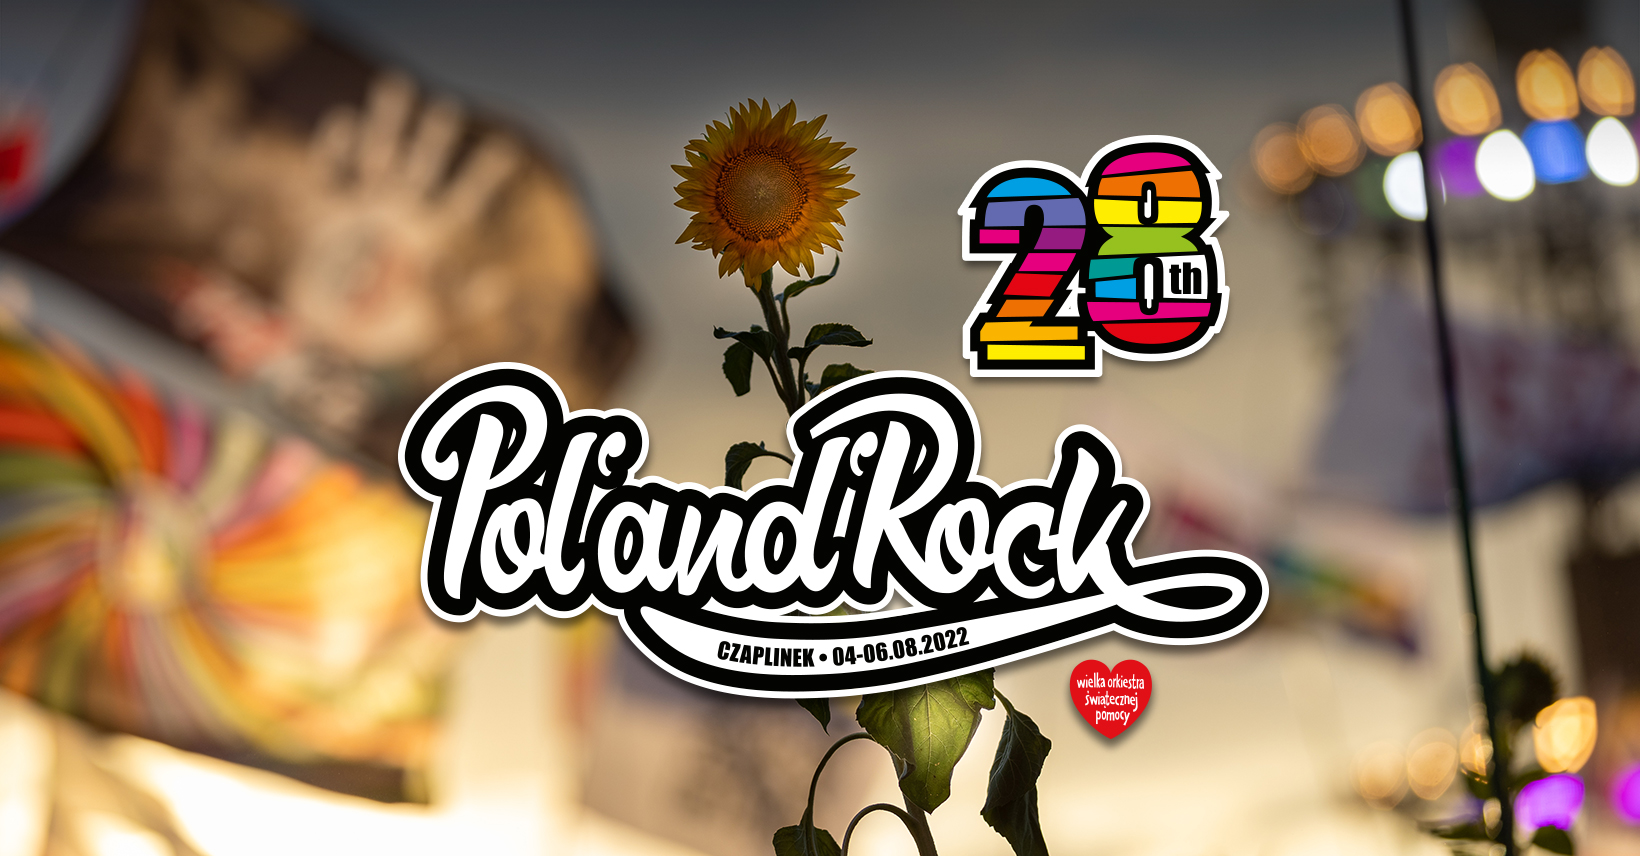 Co musisz wiedzieć o Pol'and'Rock Festiwal 2022?